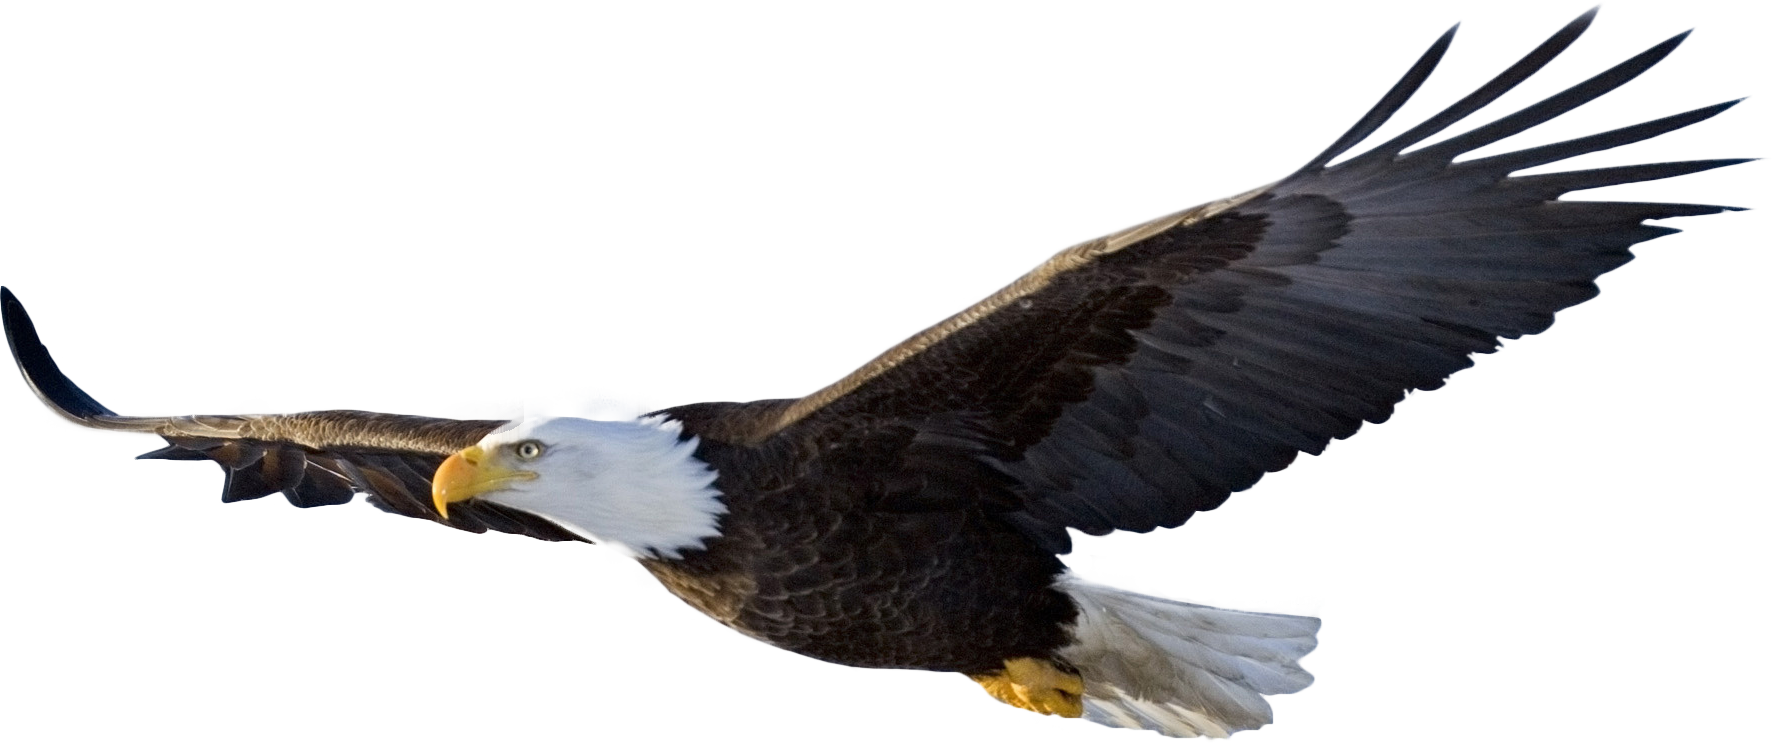 Bald Eagle PNG Transparent Images | PNG All